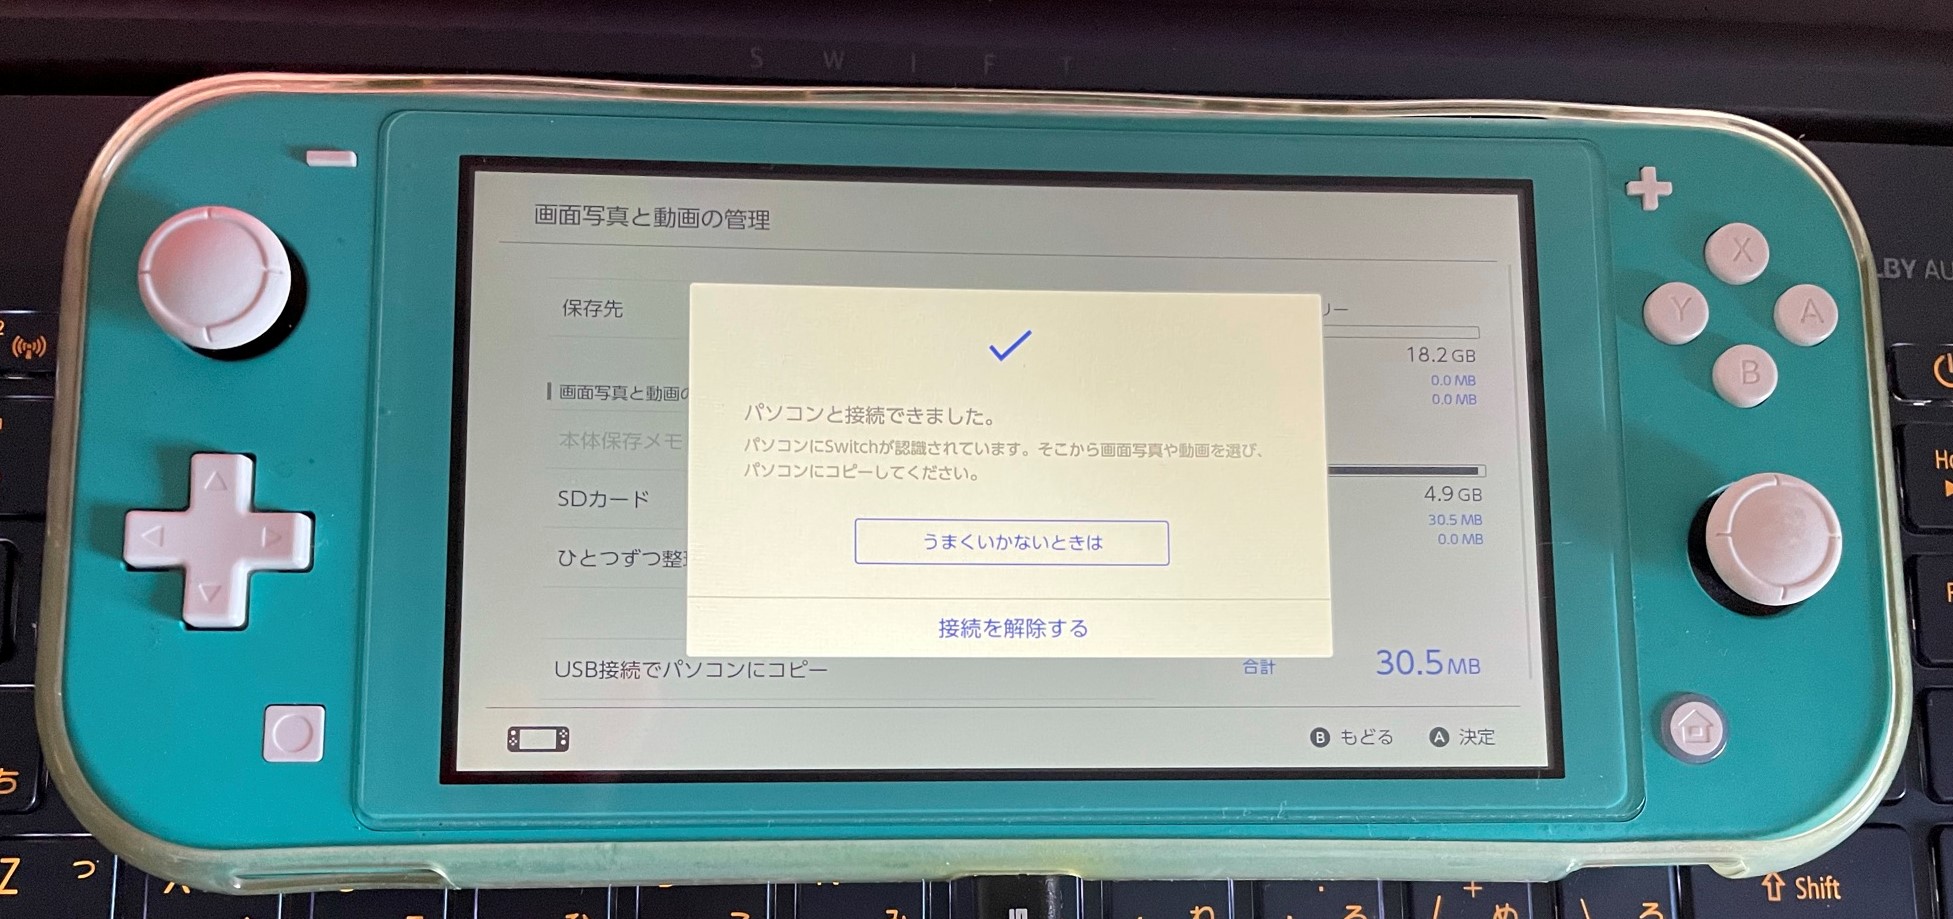 Nintendo Switch 画面写真や動画をpcやスマートフォンに直接送れるように Engadget 日本版